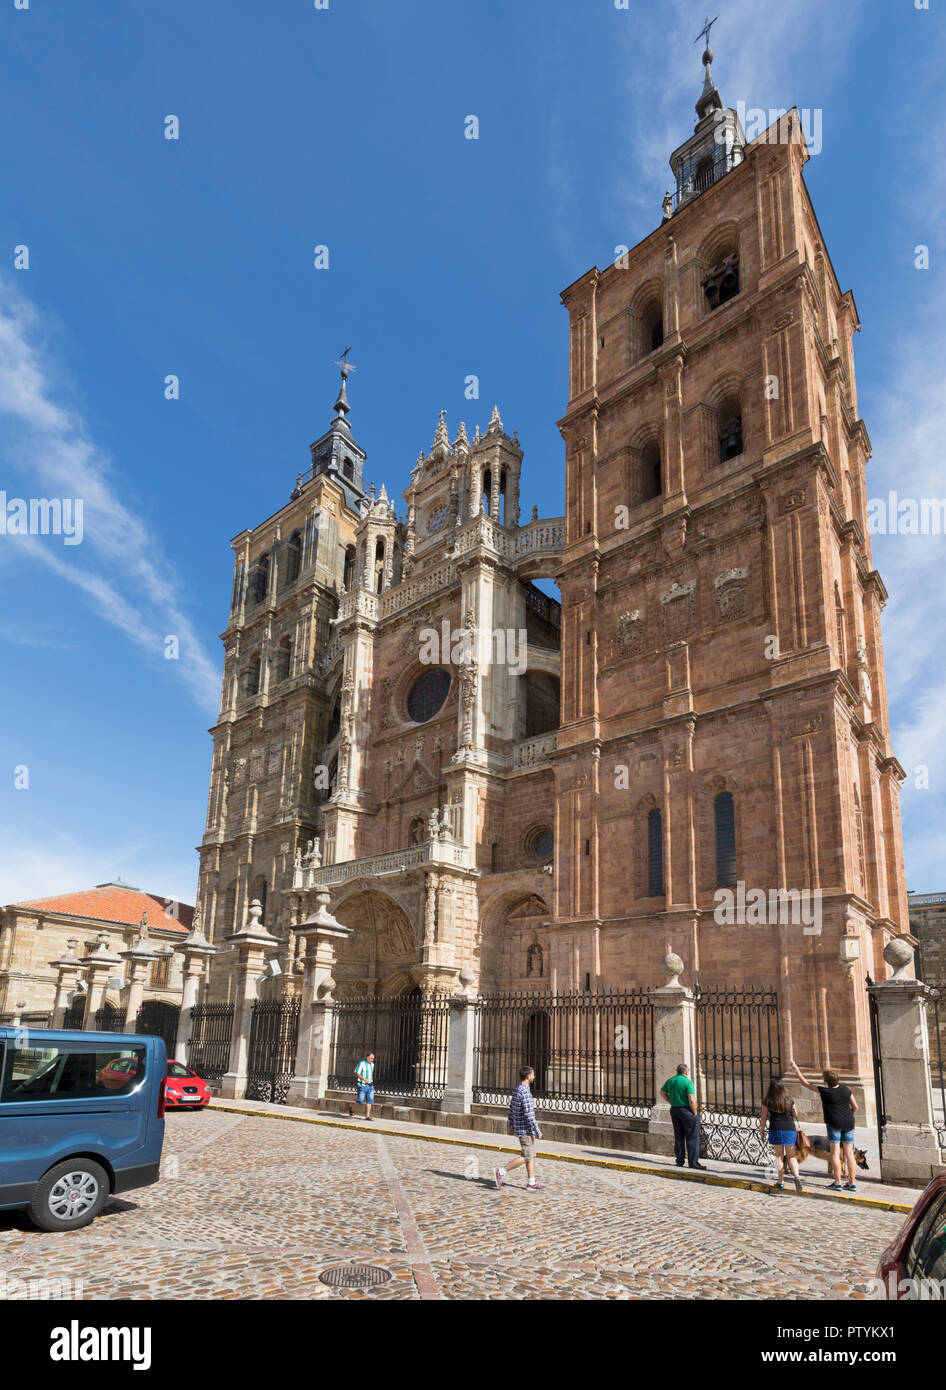 Astorga, provincia di León, Castiglia e Leon, Spagna. Cattedrale di Astorga. Catedral de Santa Maria de Astorga. Foto Stock